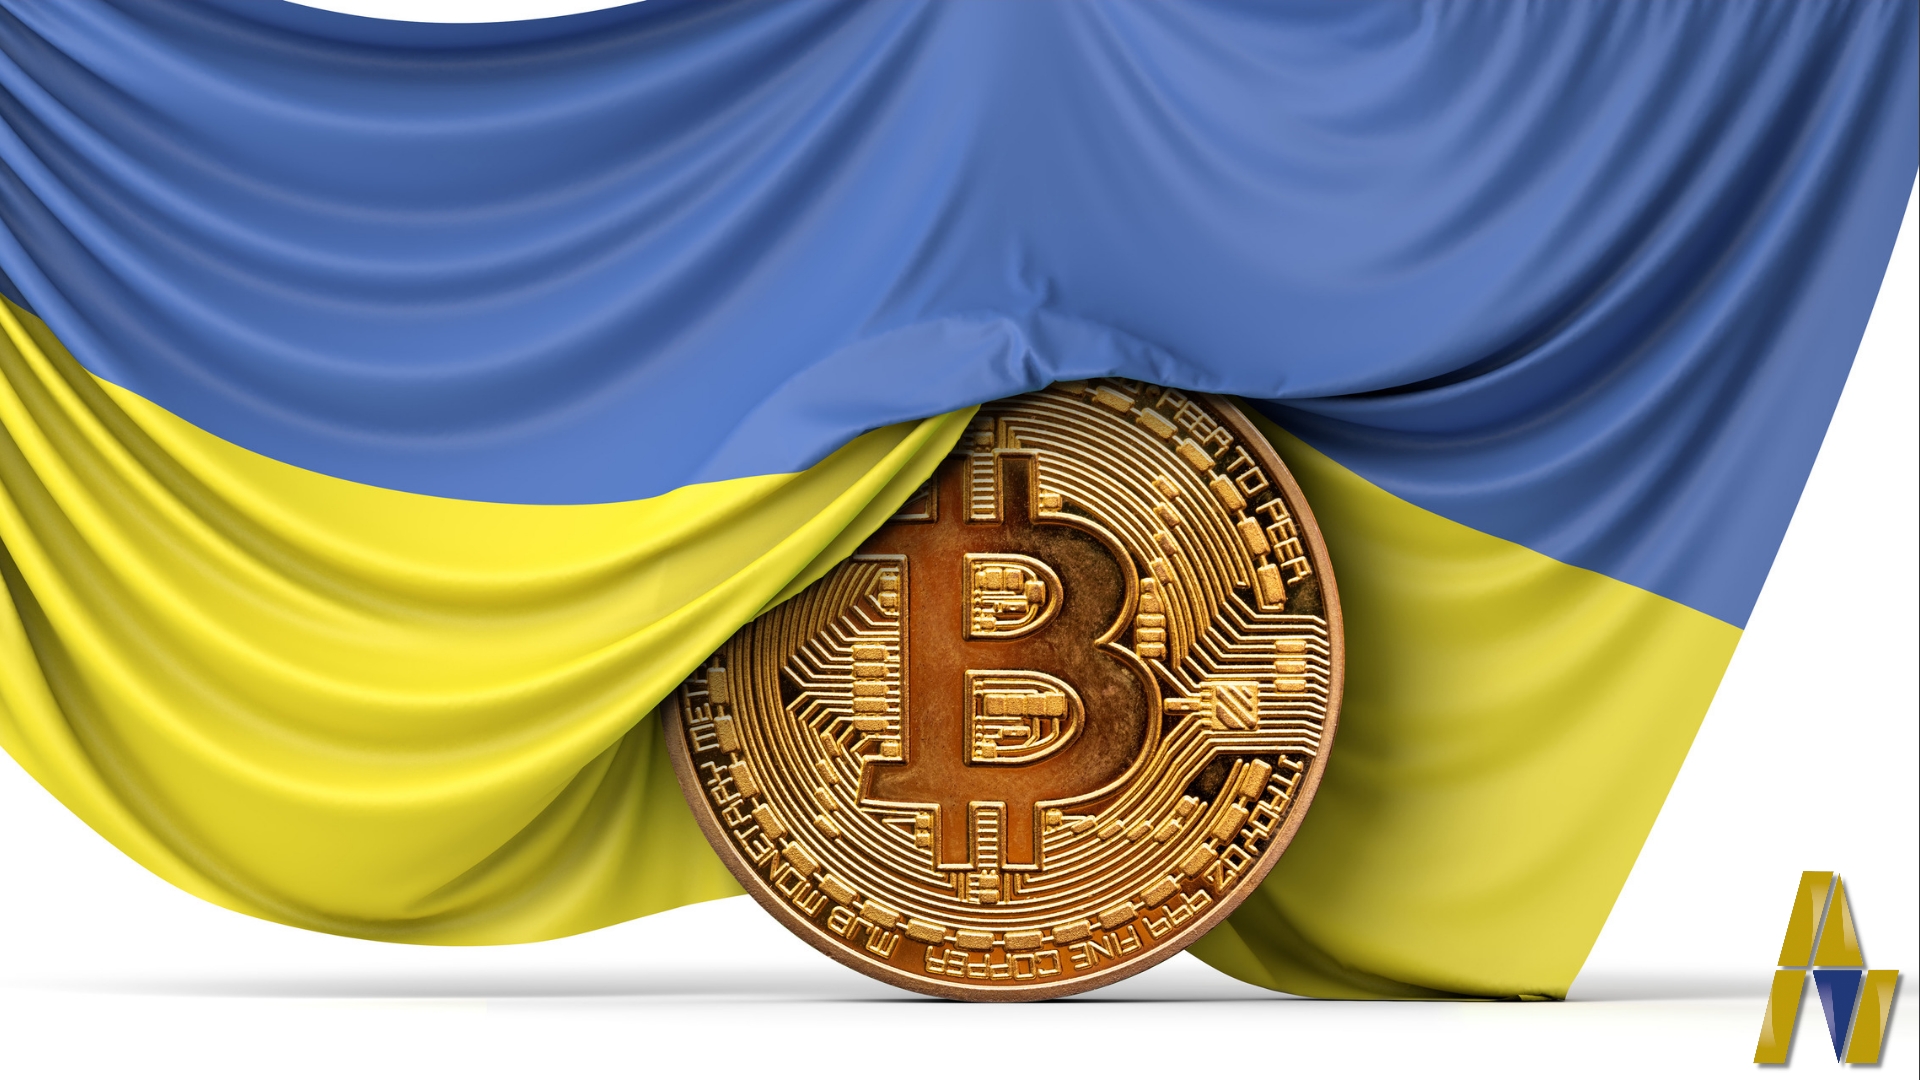 أوكرانيا توافق على قانون تنظيم العملات الرقمية